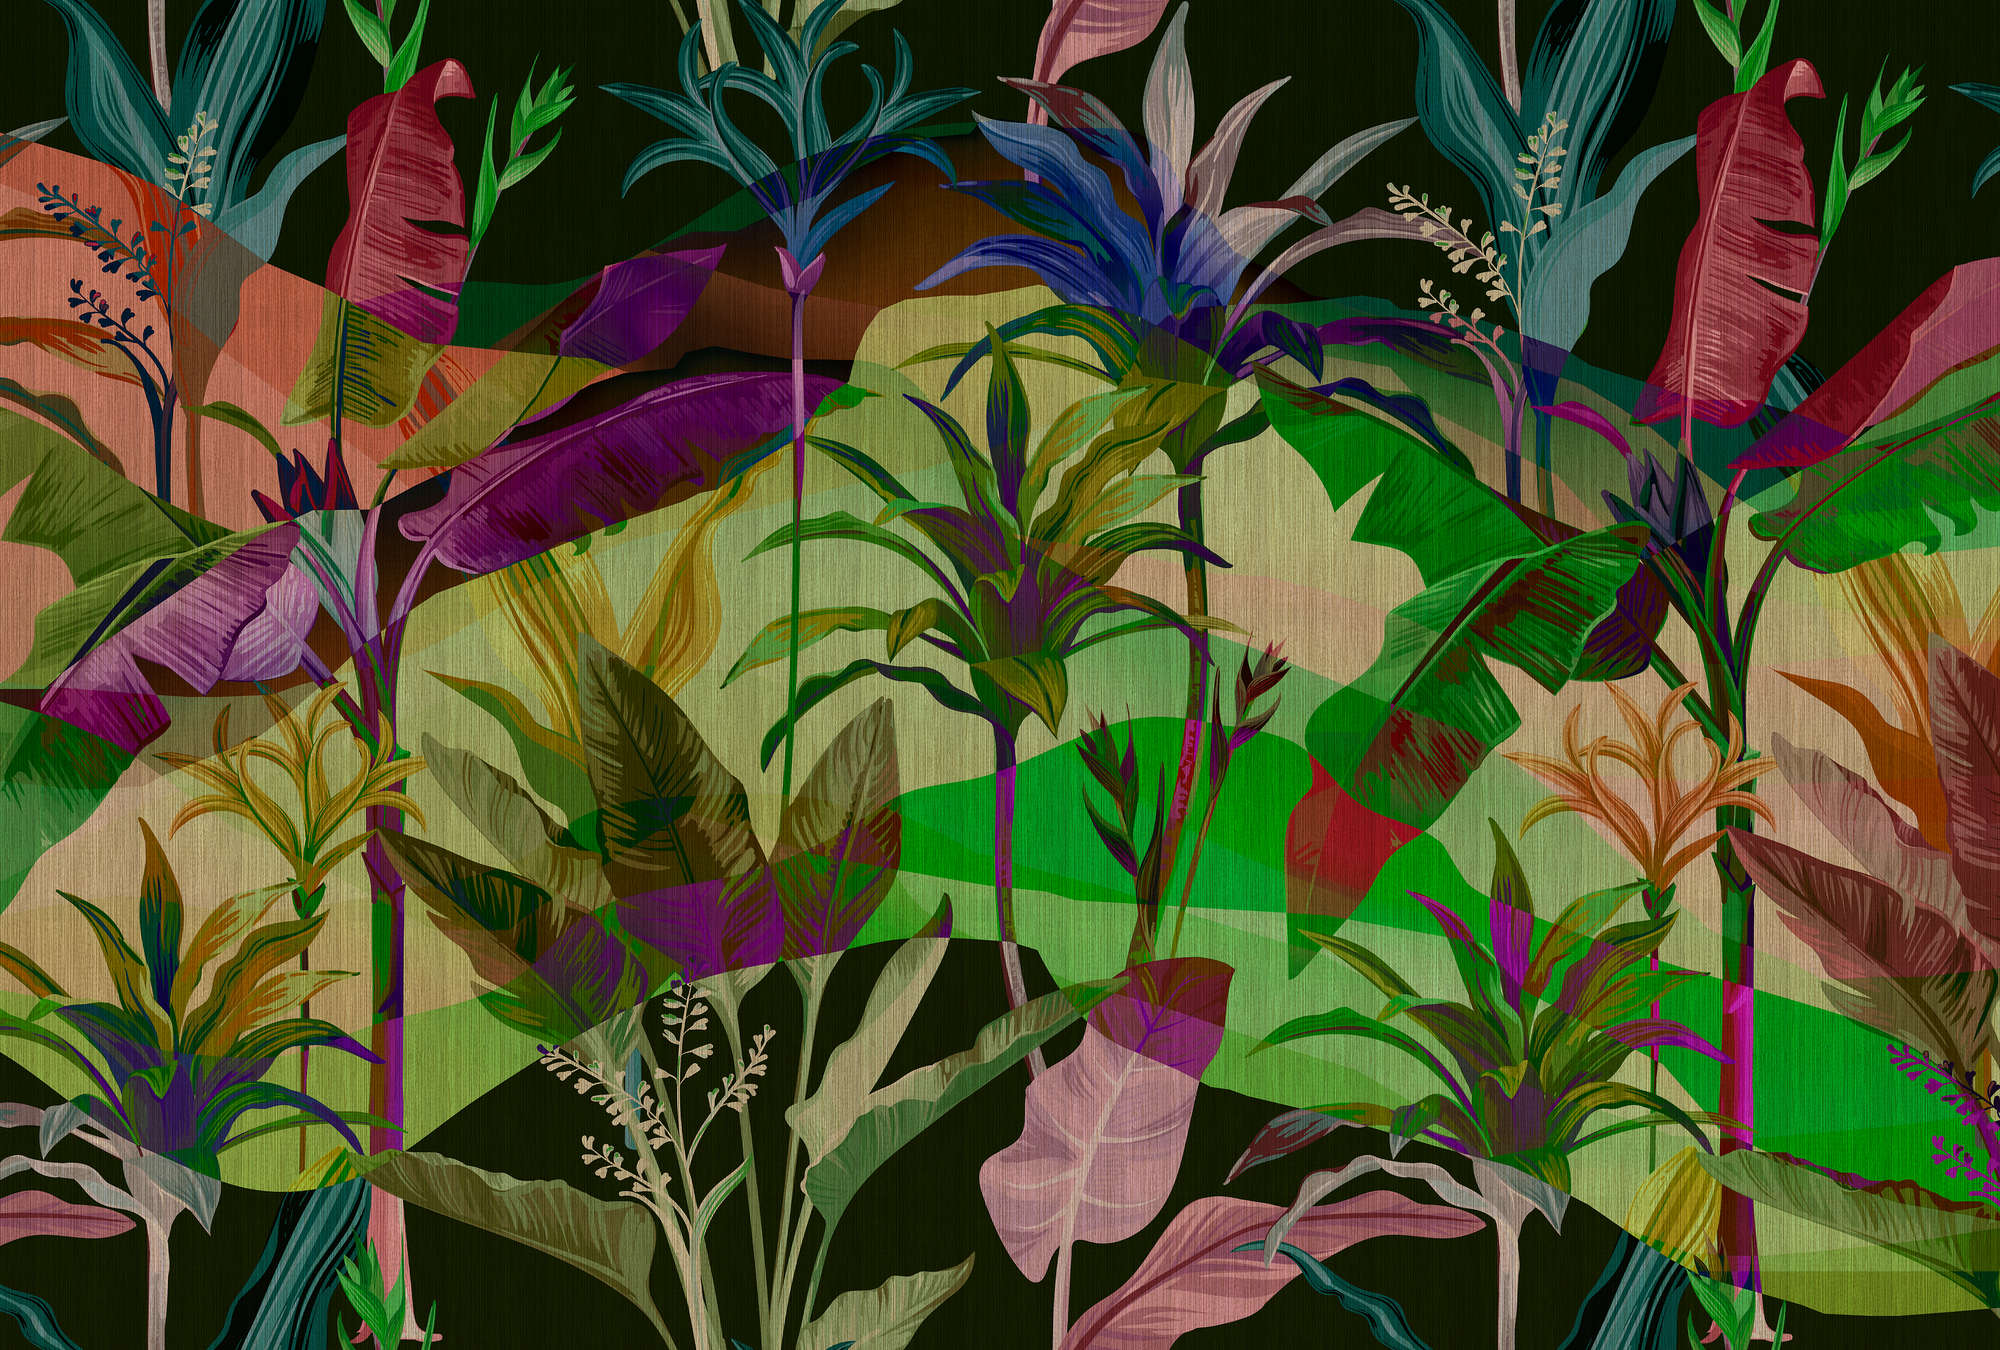             Palmyra 2 - papier peint jungle feuilles multicolores
        